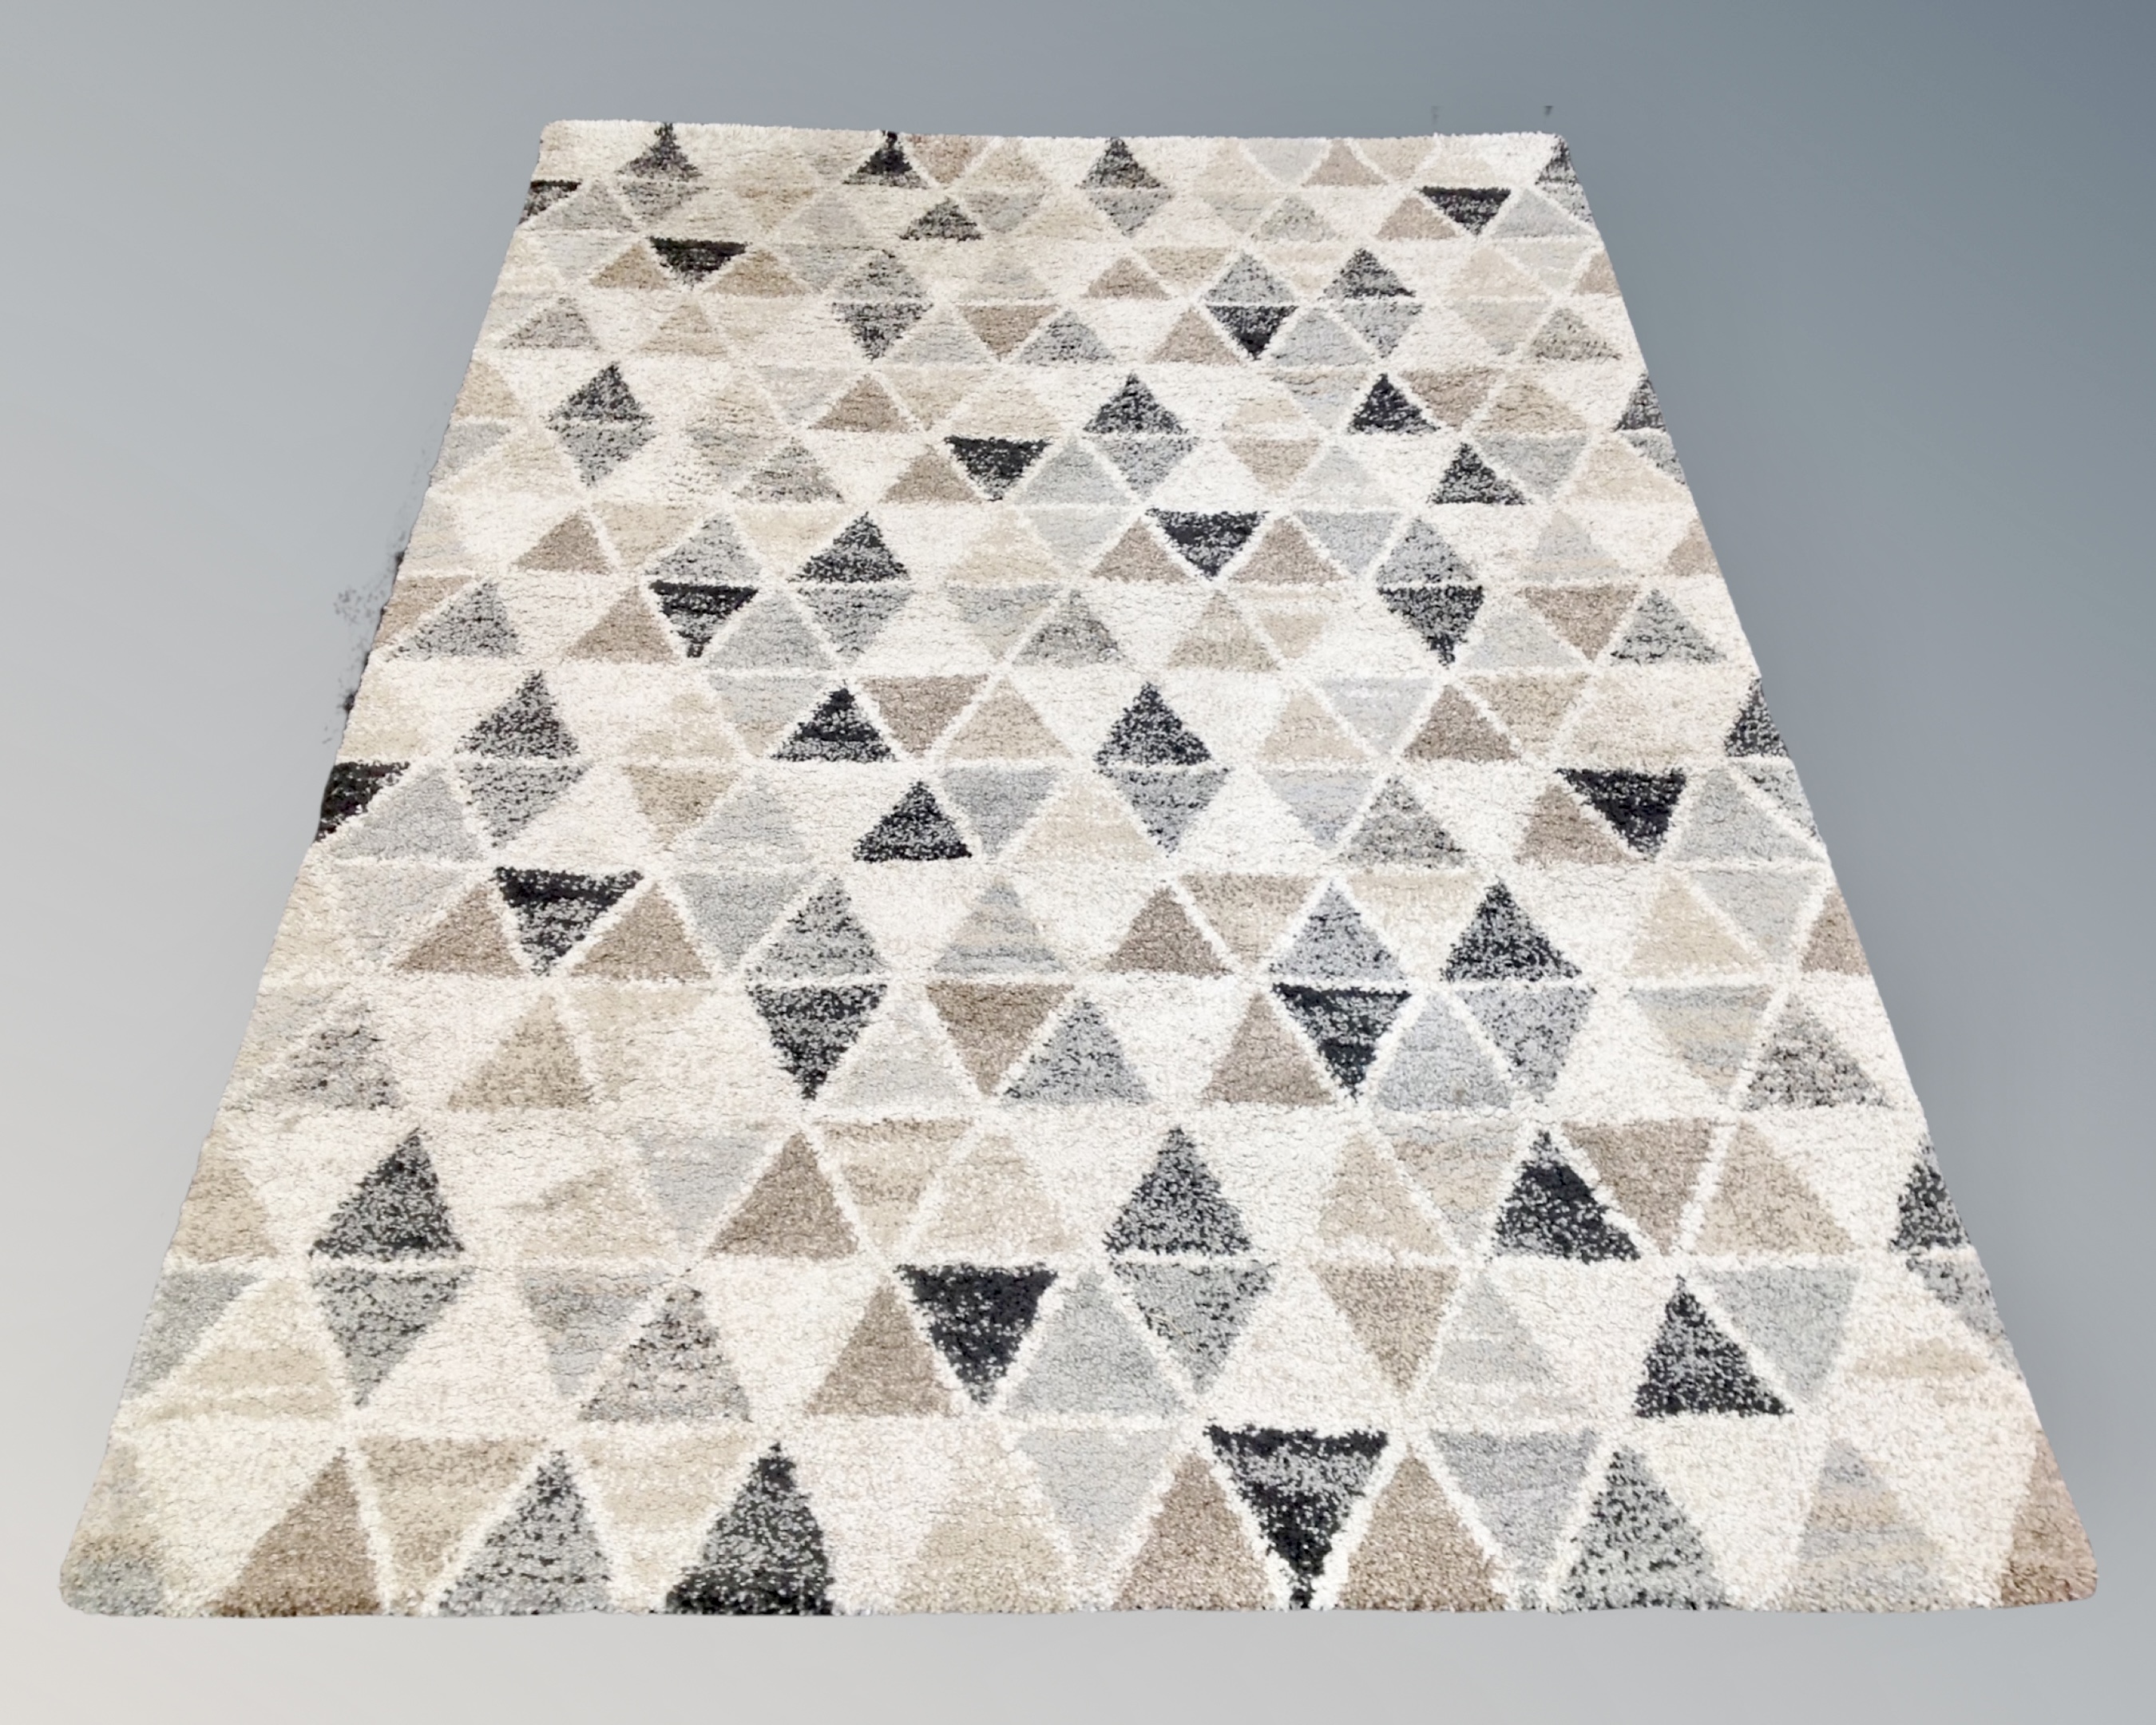 A contemporary rug